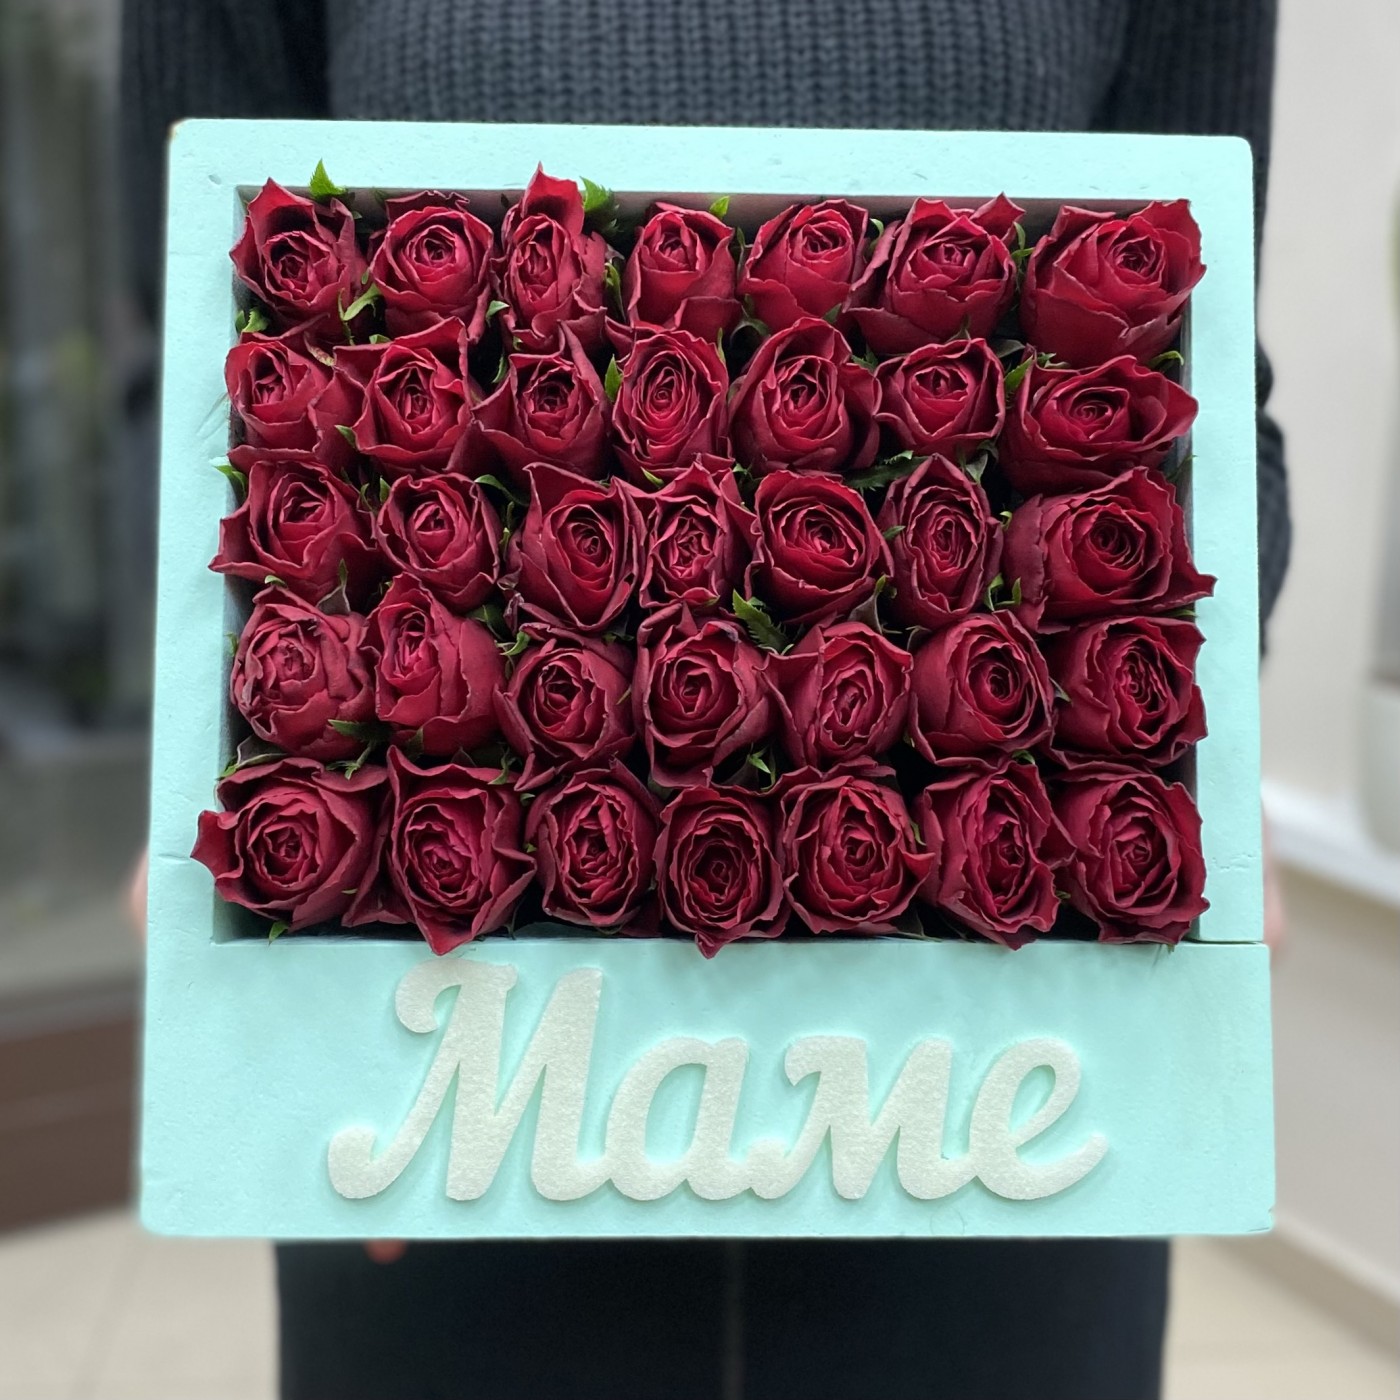 Бирюзовая Коробка с красной розой Маме